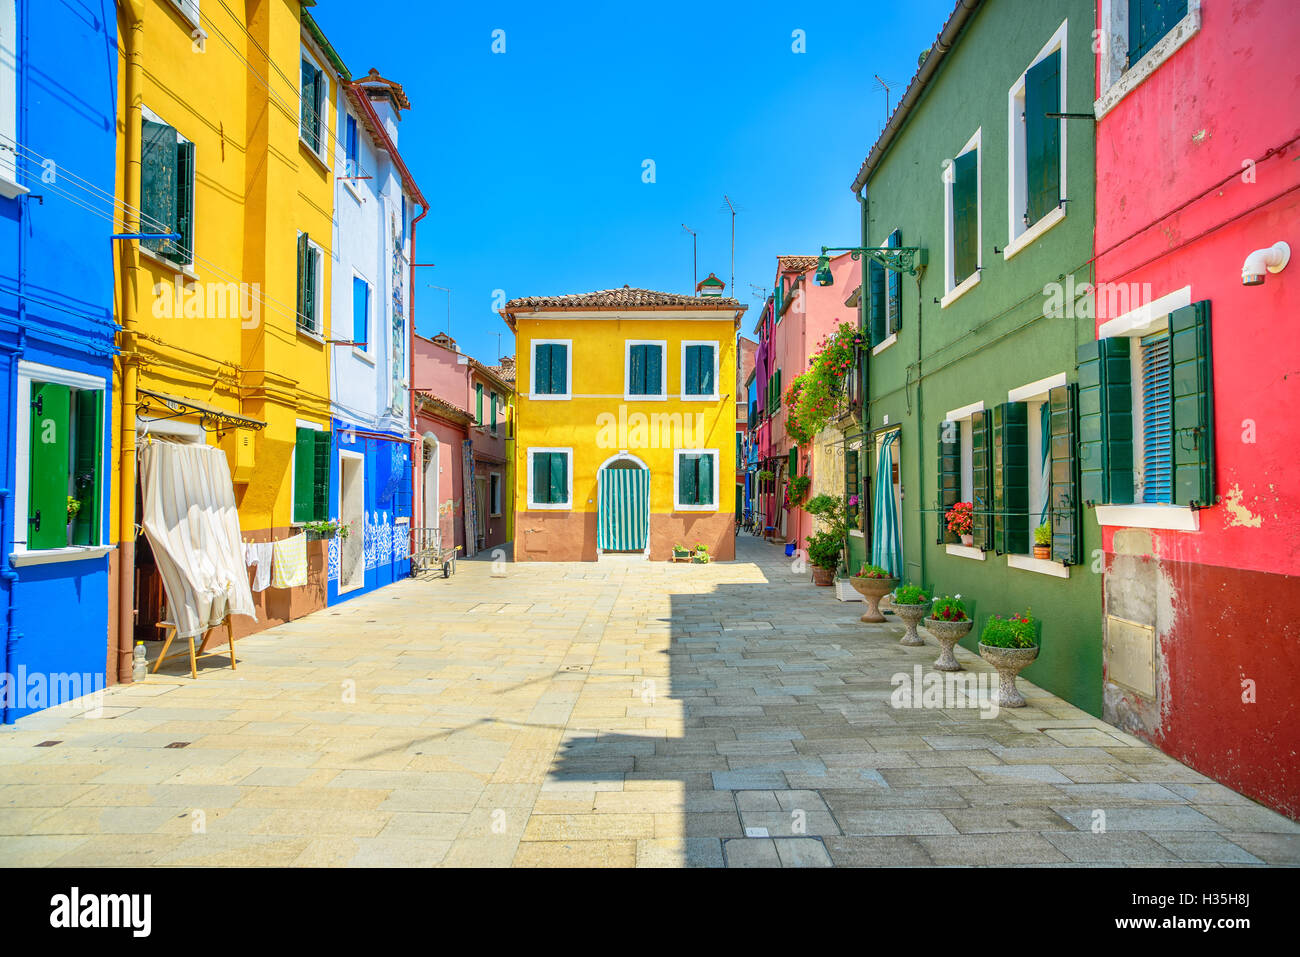 Wahrzeichen von Venedig, Burano Insel Straße, bunte Häusern, Italien, Europa. Stockfoto